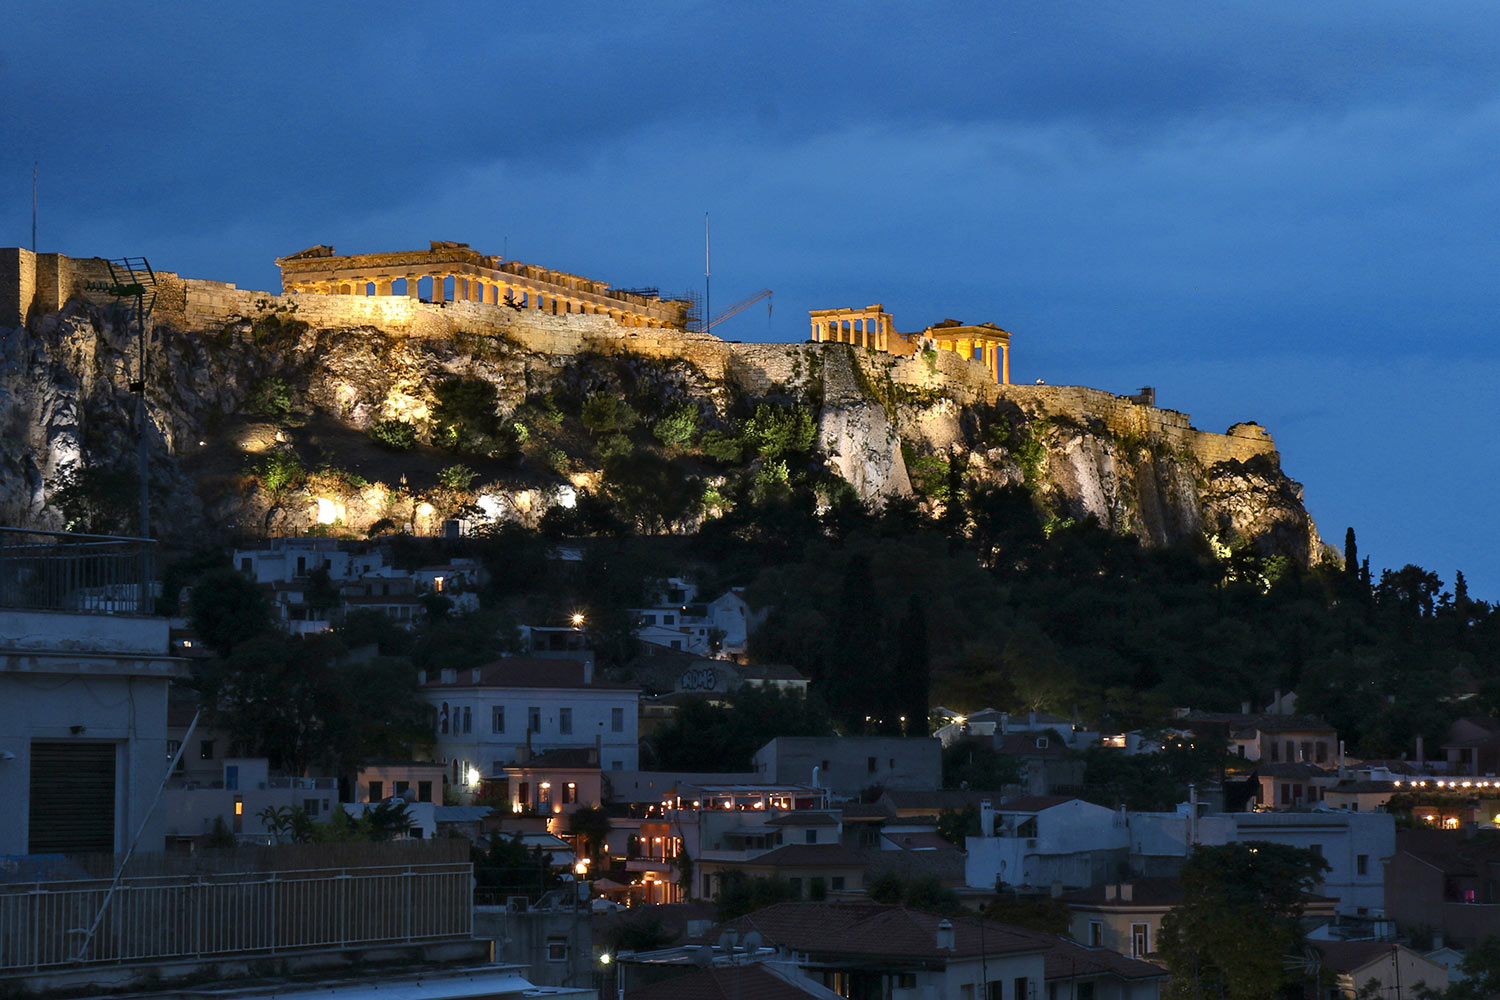 Acropole de nuit, Athènes, Grèce / Acropolis by night, Athens, Greece